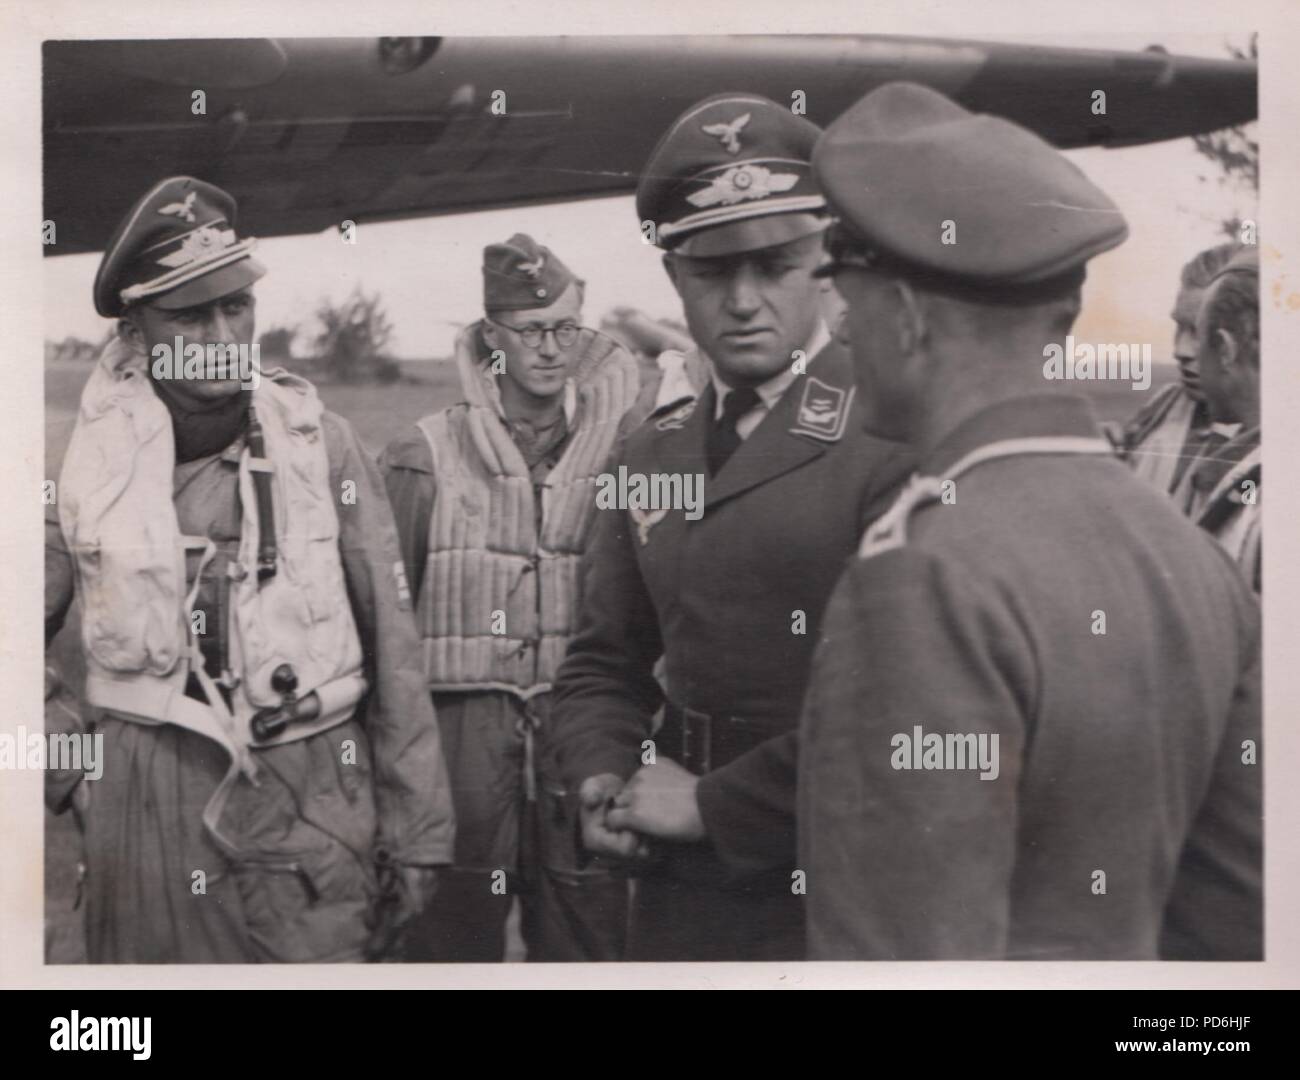 Droit de l'album photo de l'Oberleutnant Oscar Müller de la Kampfgeschwader 1 : l'Oberleutnant Friedrich Clodius (à gauche) en conversation avec le chef de son équipe au sol Runge. Clodius est le Staffelkapitän du 5./KG 1 durant l'été 1941 et jusqu'à ce qu'il a été affiché le 8 novembre 1941 manquant. Banque D'Images